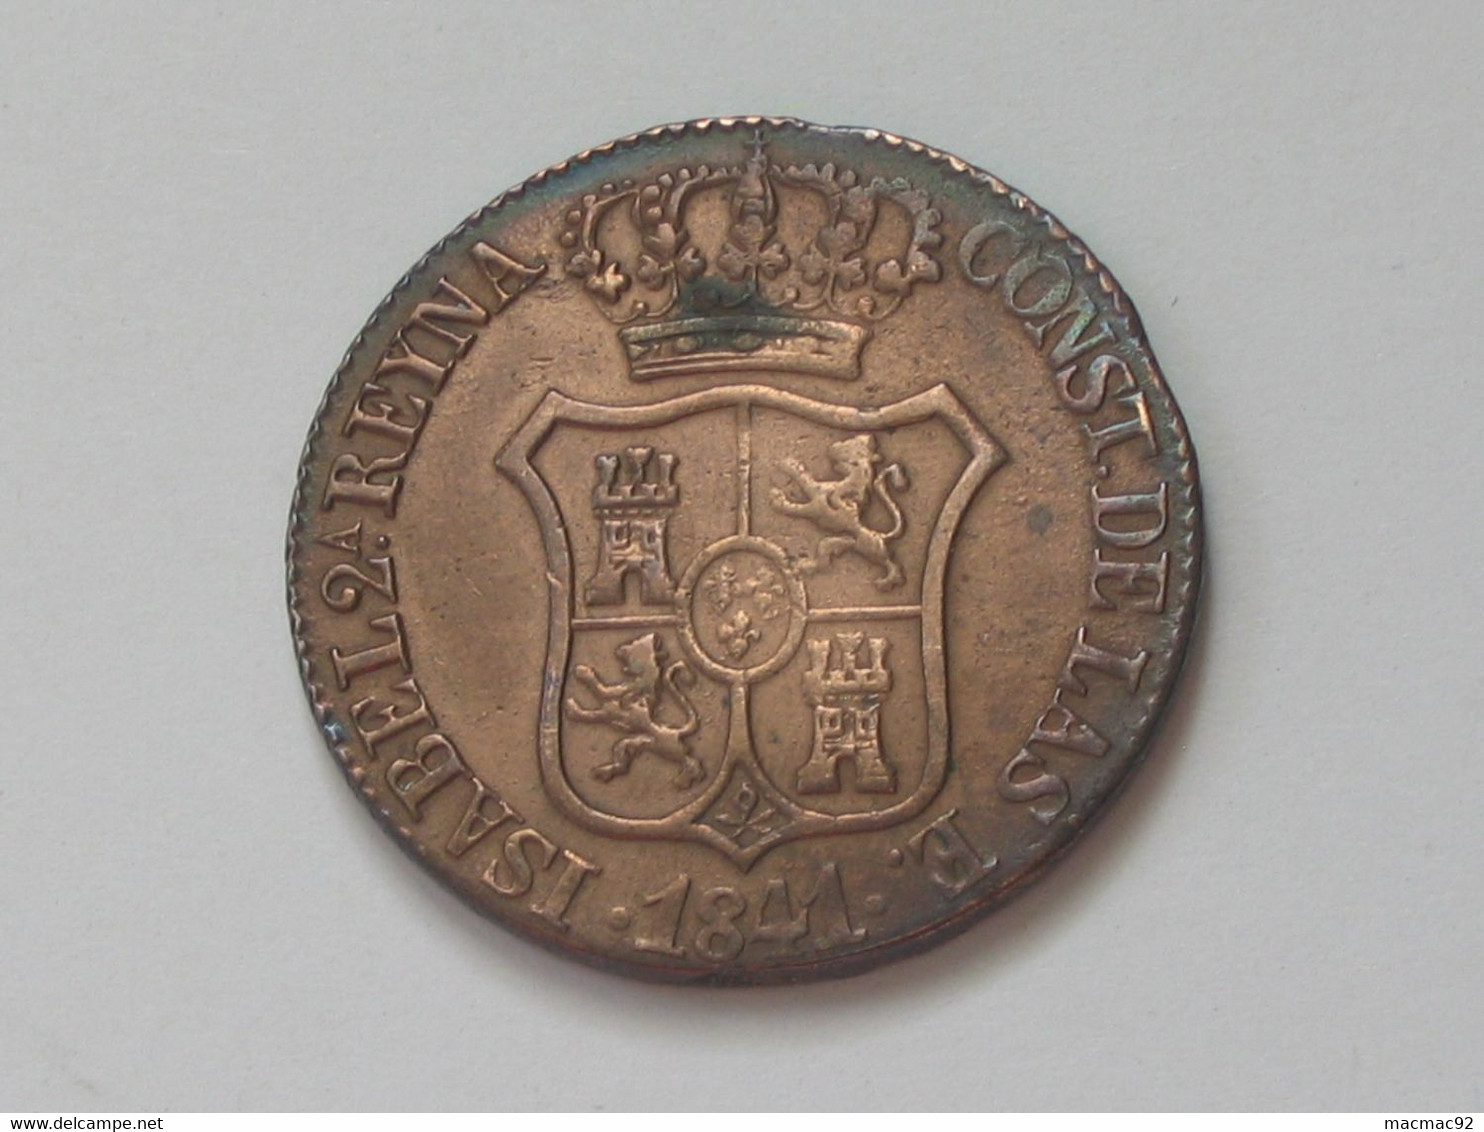 ESPAGNE - CATALOGNE - 6 QUARTOS 1841   **** EN ACHAT IMMEDIAT   ****   Très Belle Monnaie !!!!! - Münzen Der Provinzen